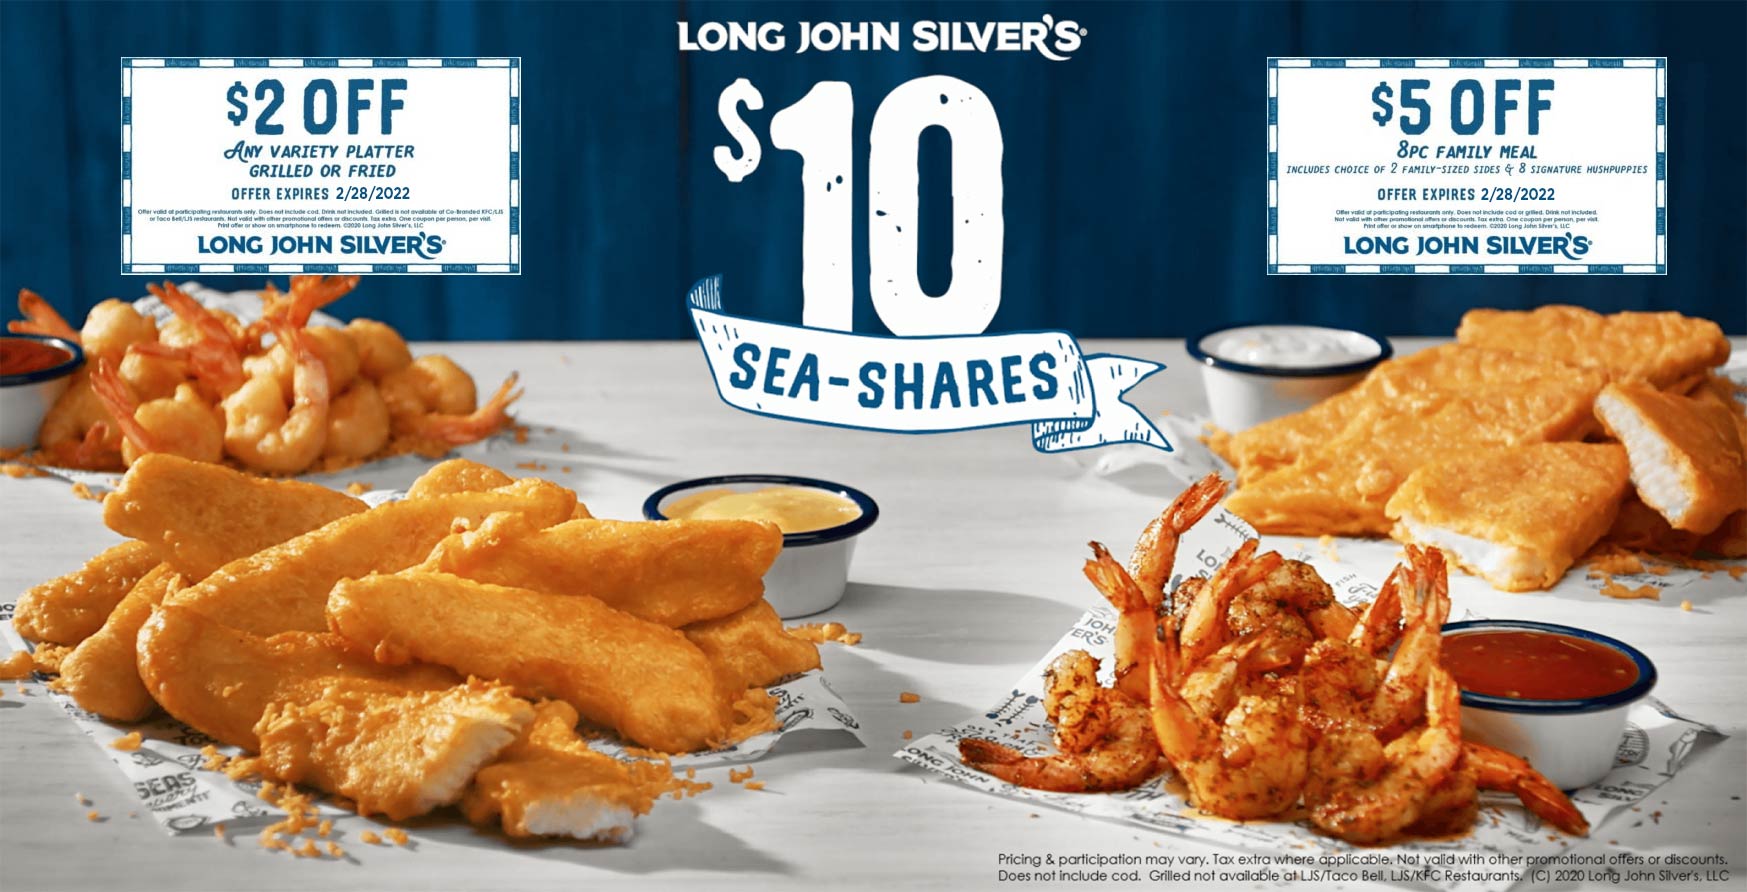 Long John Silvers restaurants Coupon  $2-$5 off at Long John Silvers restaurants #longjohnsilvers 